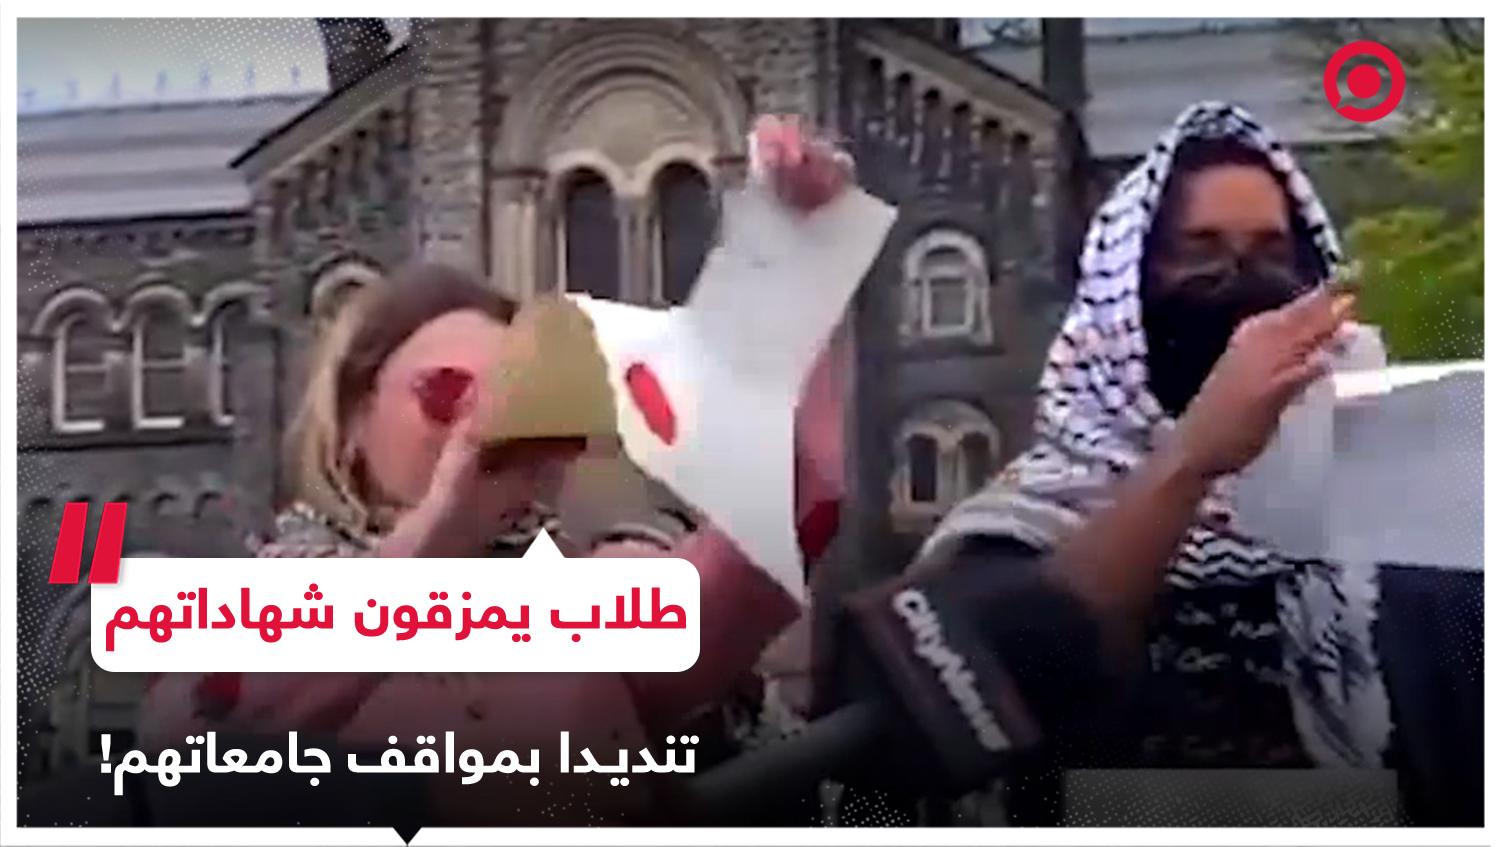 طلاب يقومون بتمزيق شهاداتهم الجامعية تعبيرا عن تضامنهم مع القضية الفلسطينية